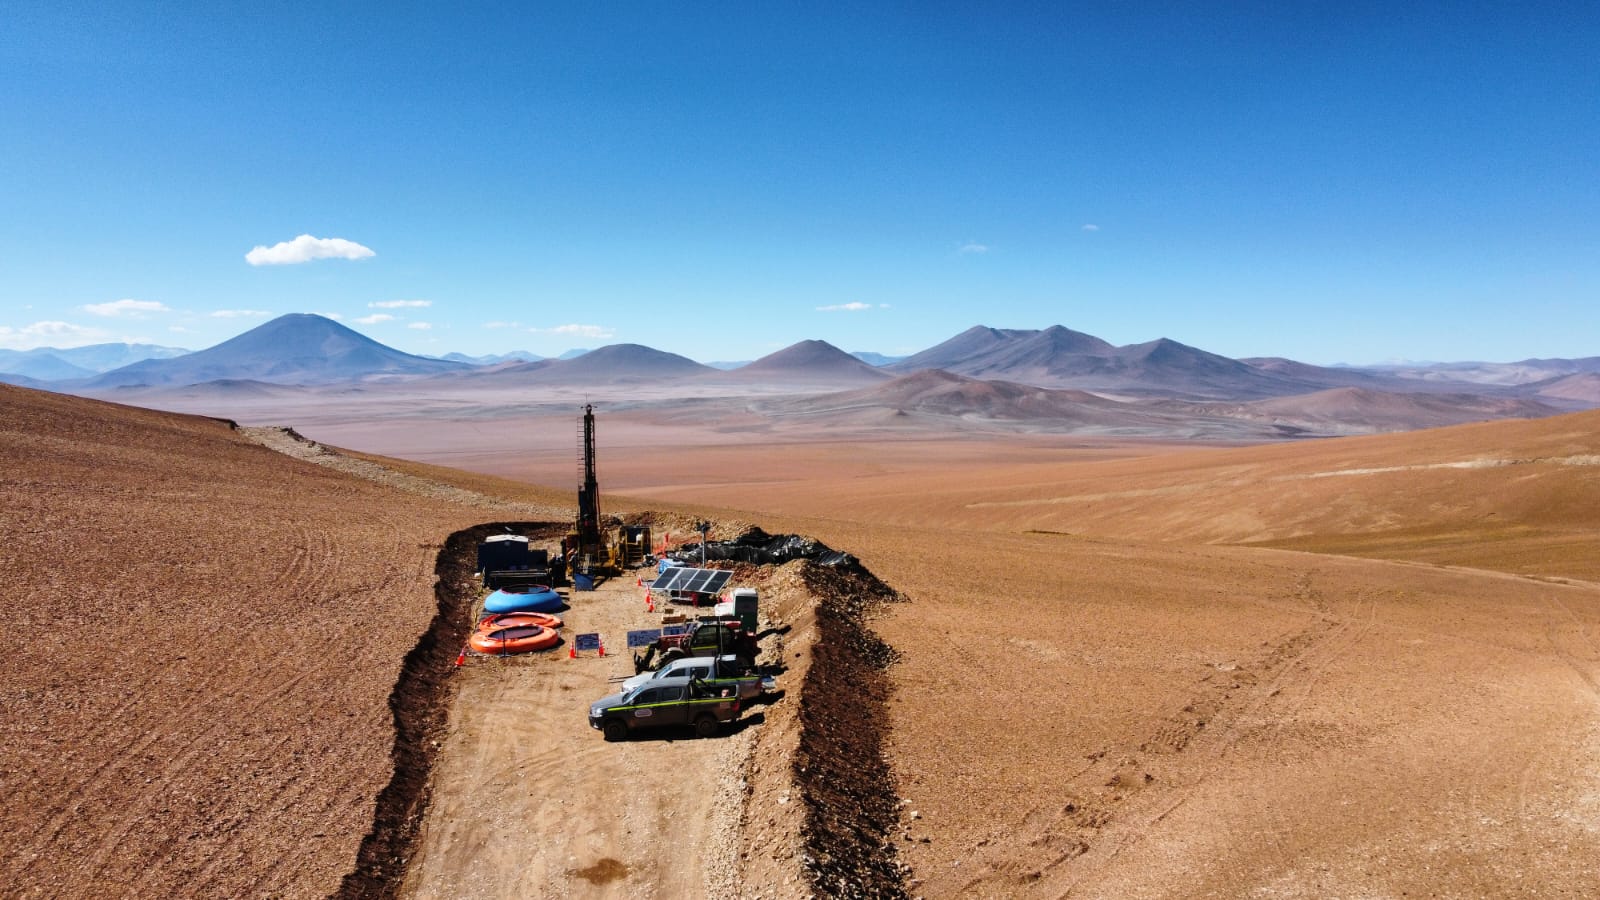  En San Juan, Pampa Metals definió el programa de exploración en el proyecto de cobre-oro Piuquenes